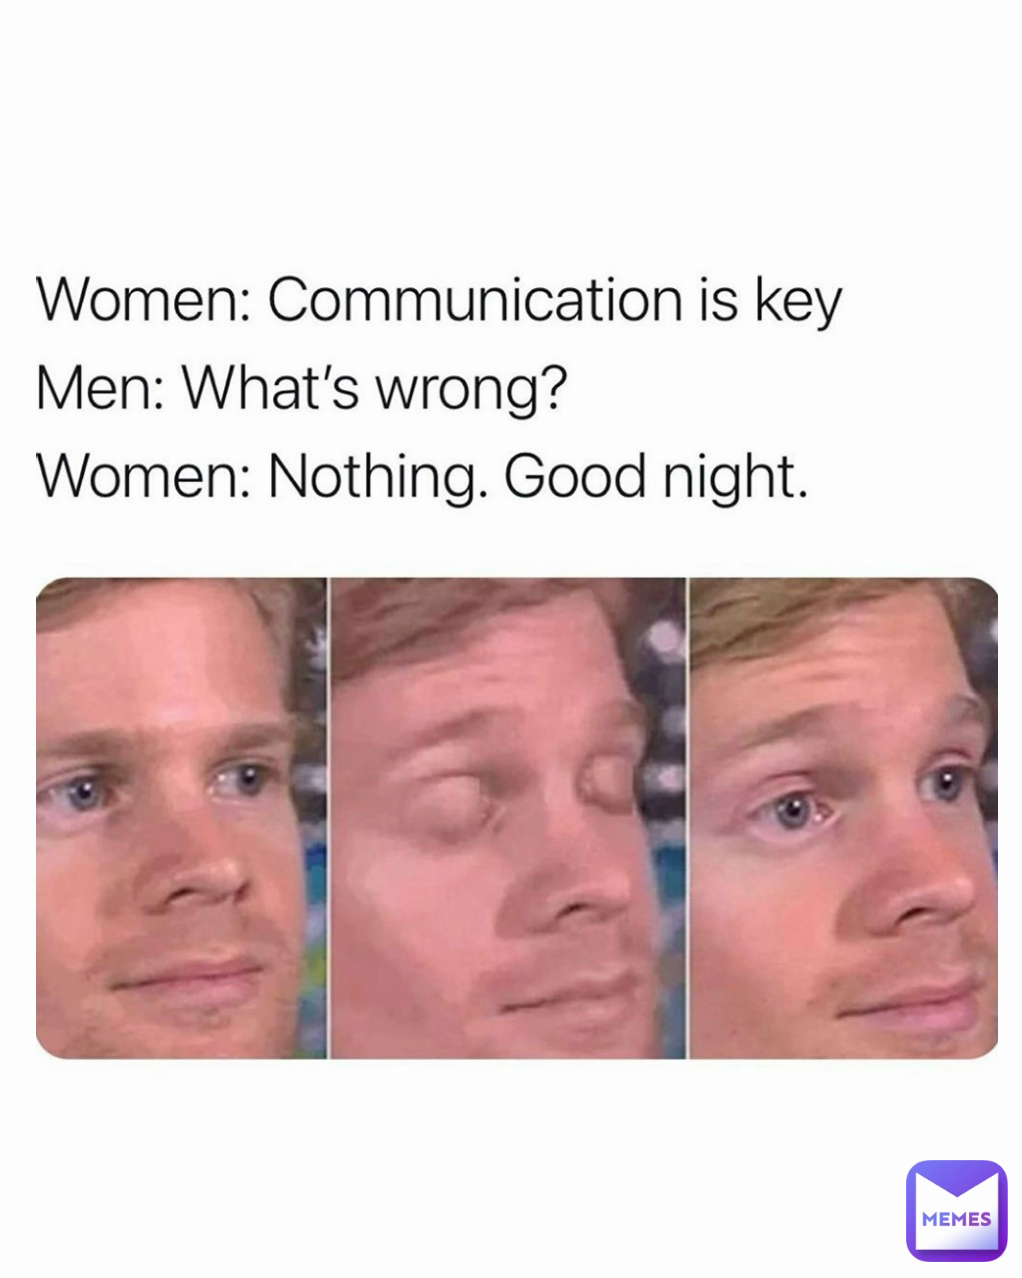 Women: communication is key